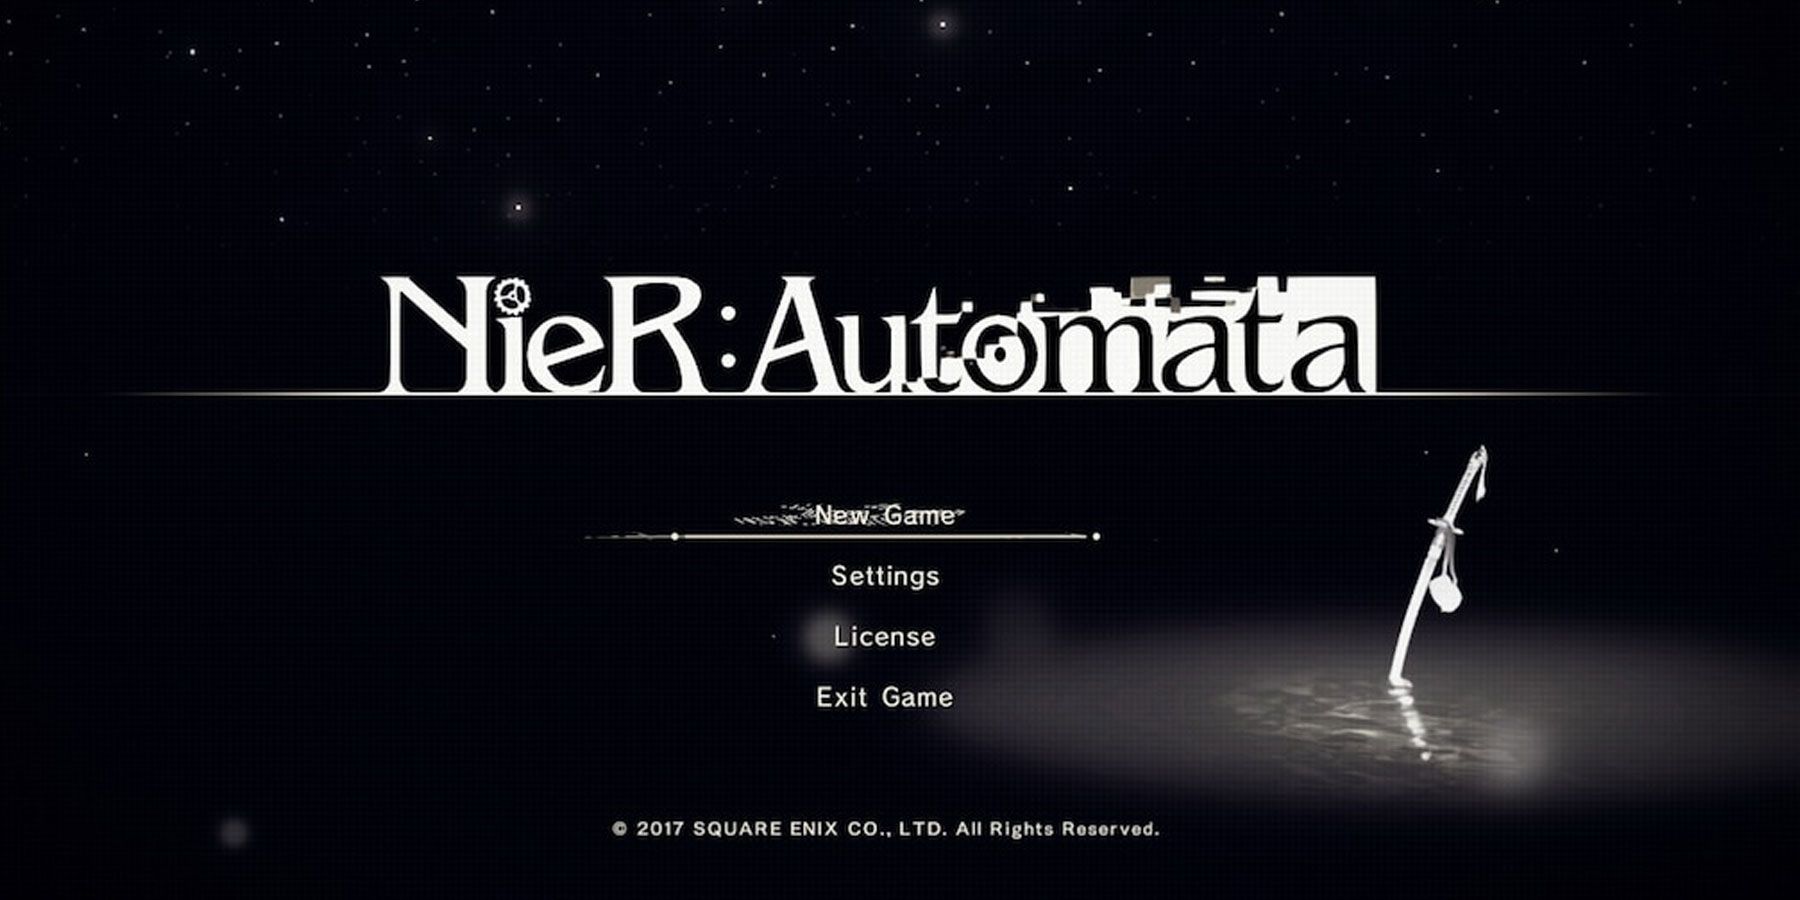 NieR: Automata Ending E title screen